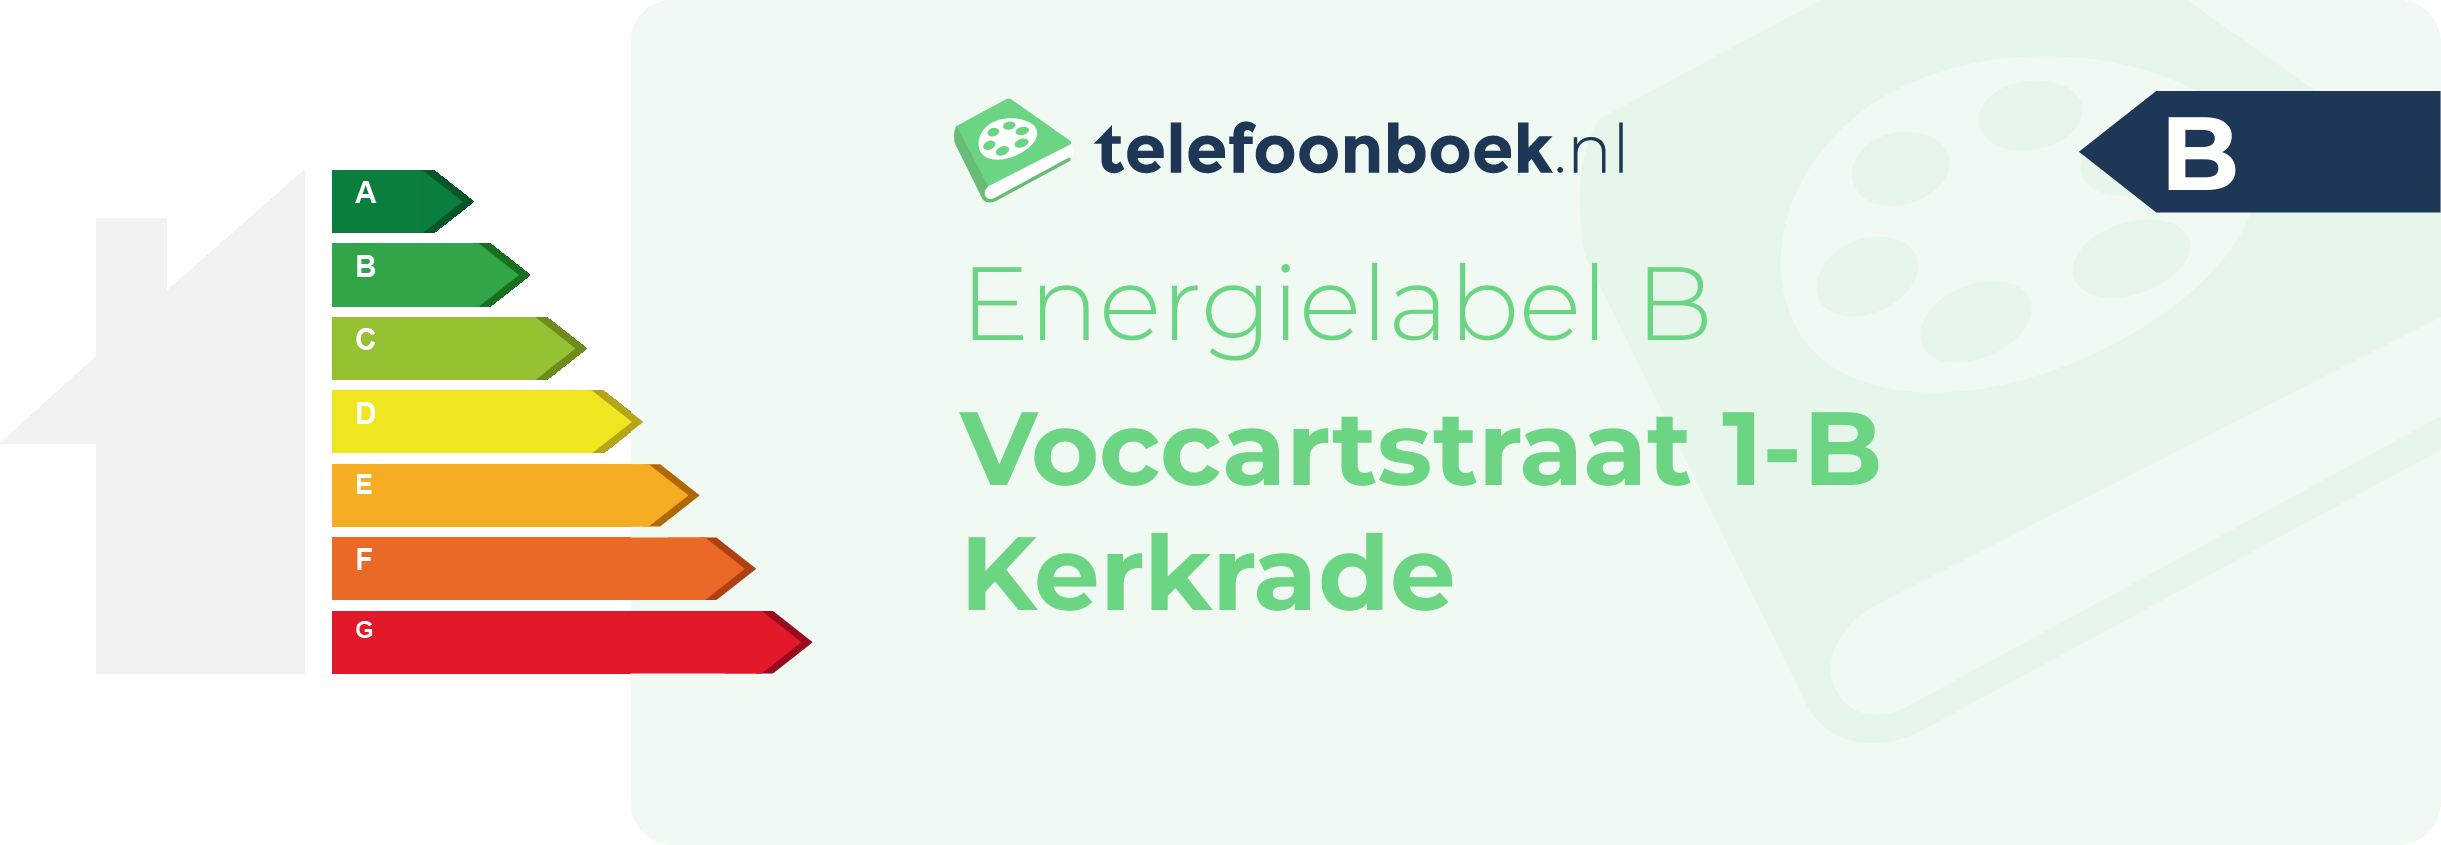 Energielabel Voccartstraat 1-B Kerkrade